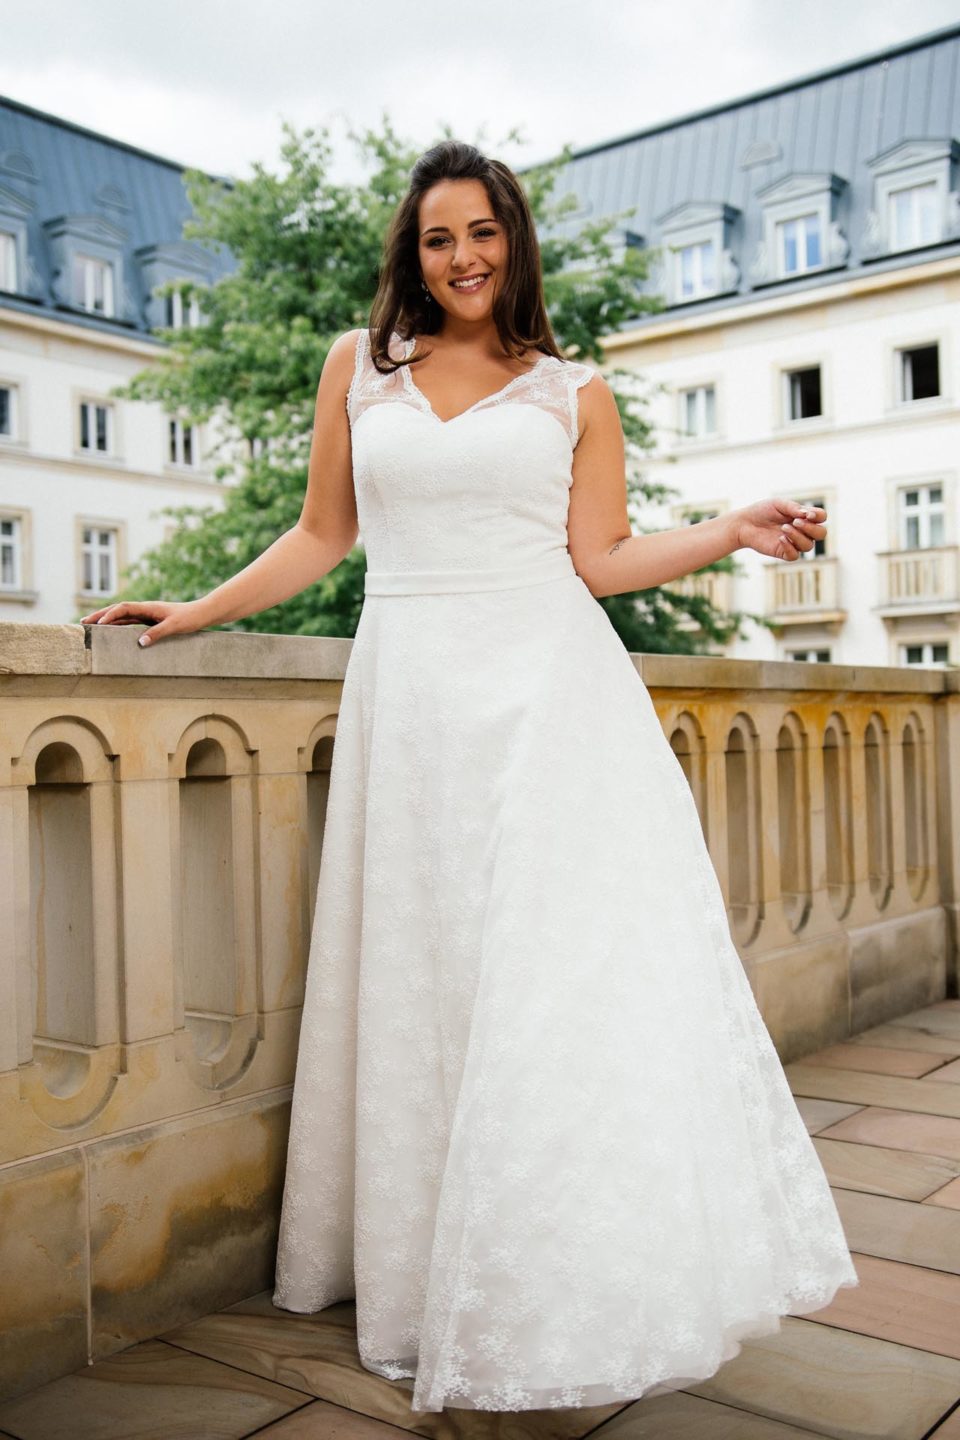 Brautkleider große Größen – moderne Hochzeitskleider in 48,50 und 52!